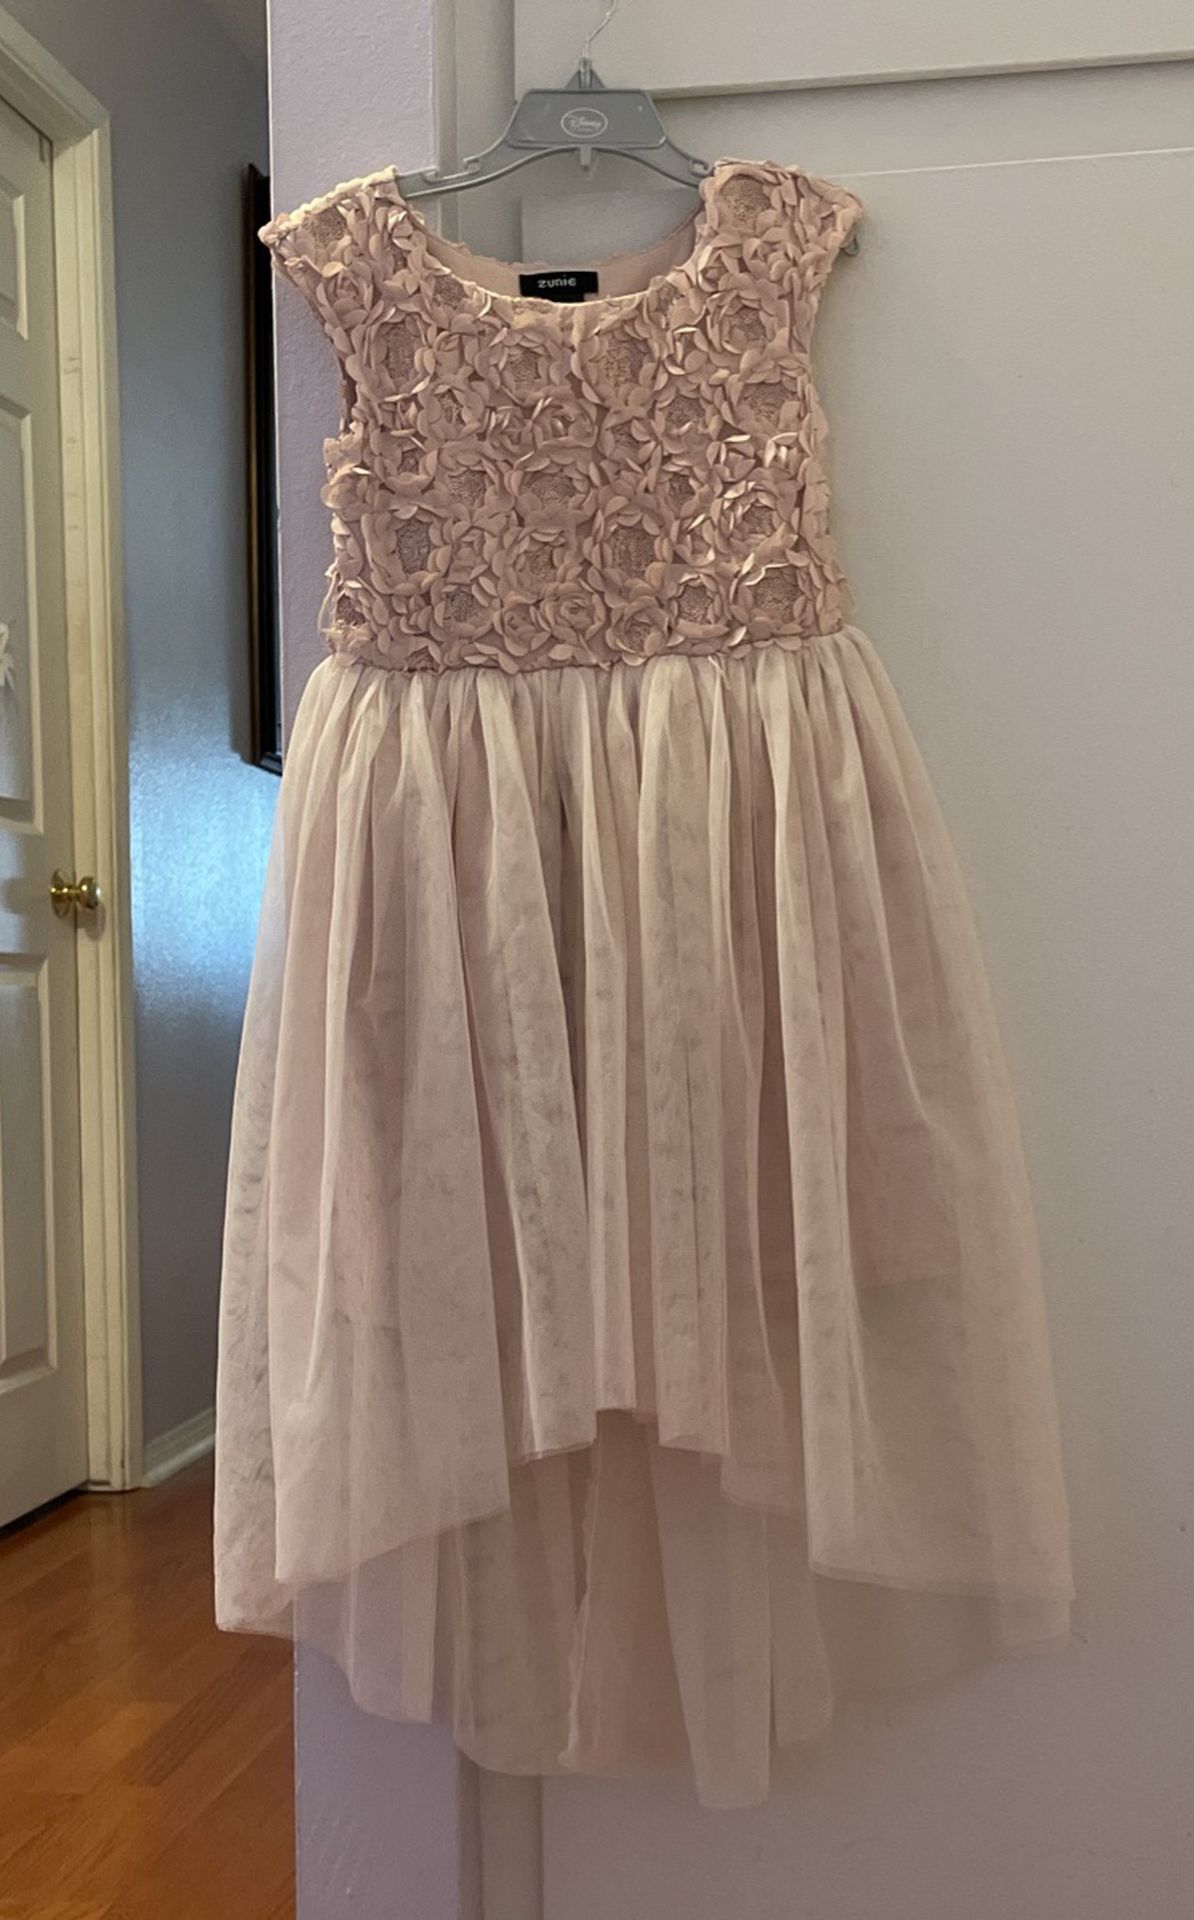 Zunie Blush Dress Size 6-8